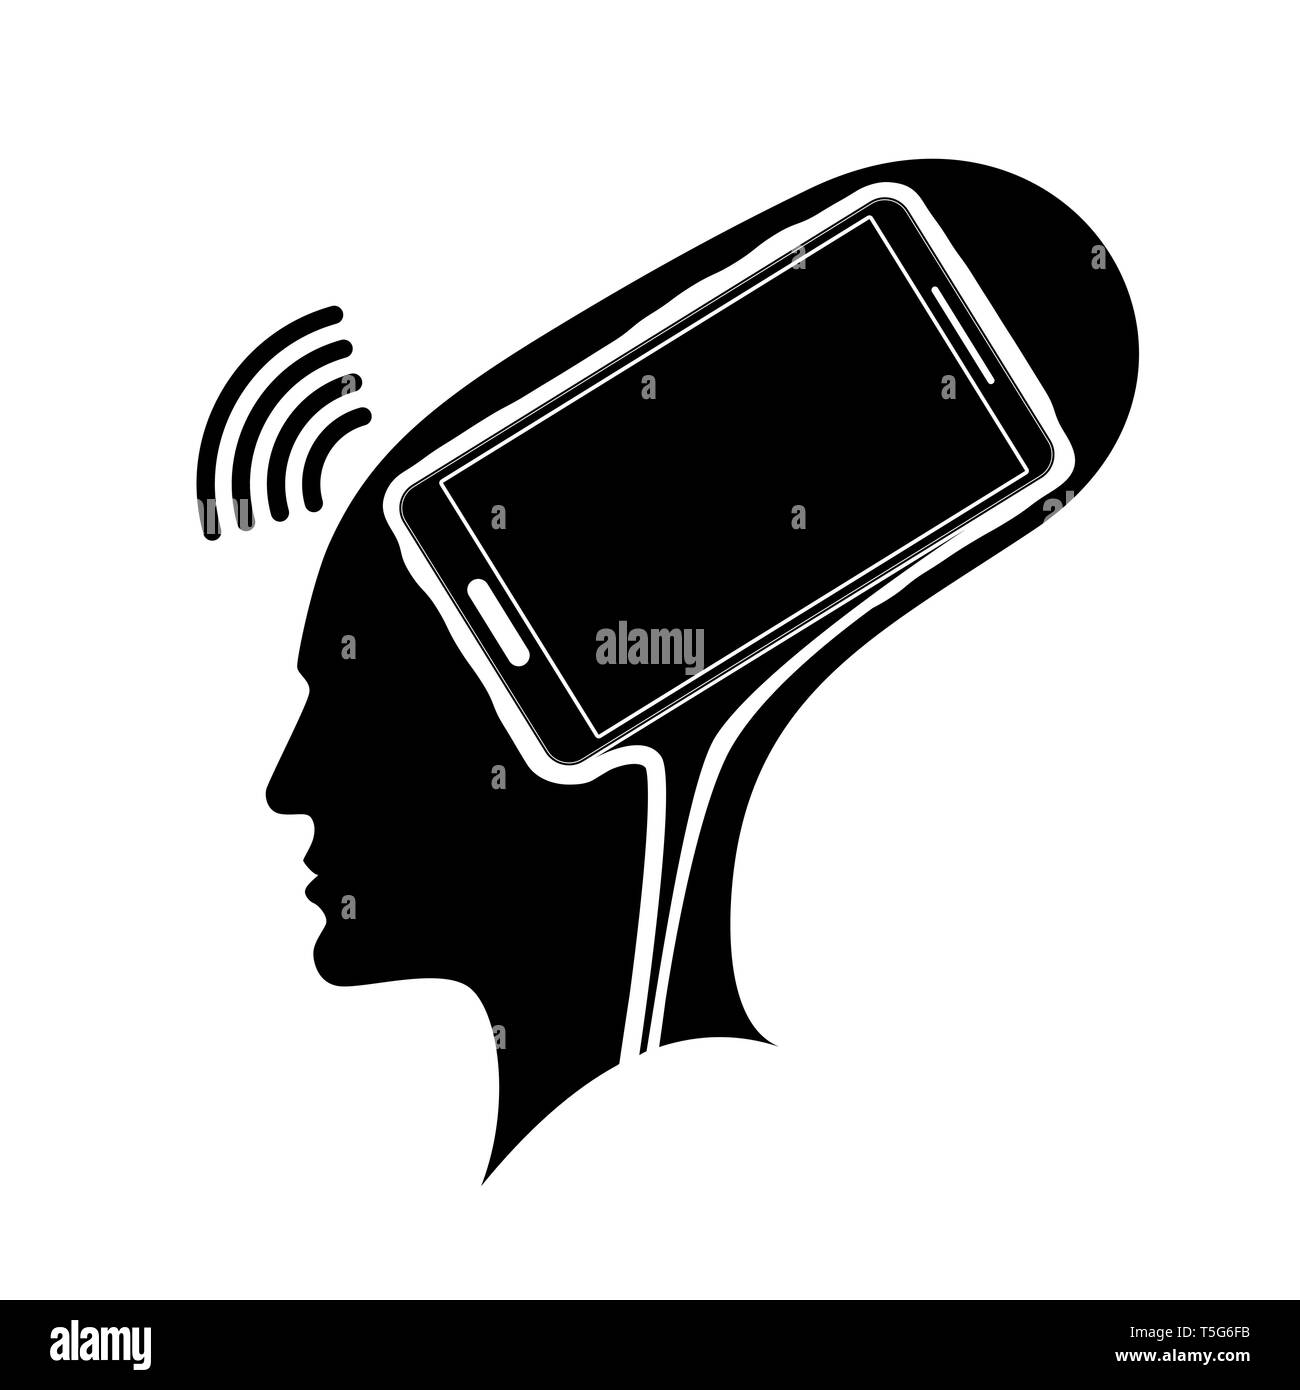 Silhouette eines Mannes, der Kopf mit einem Gehirn in Form eines Smartphones. Die Abhängigkeit von dem Telefon, soziale Netzwerke oder das Internet. Stock Vektor